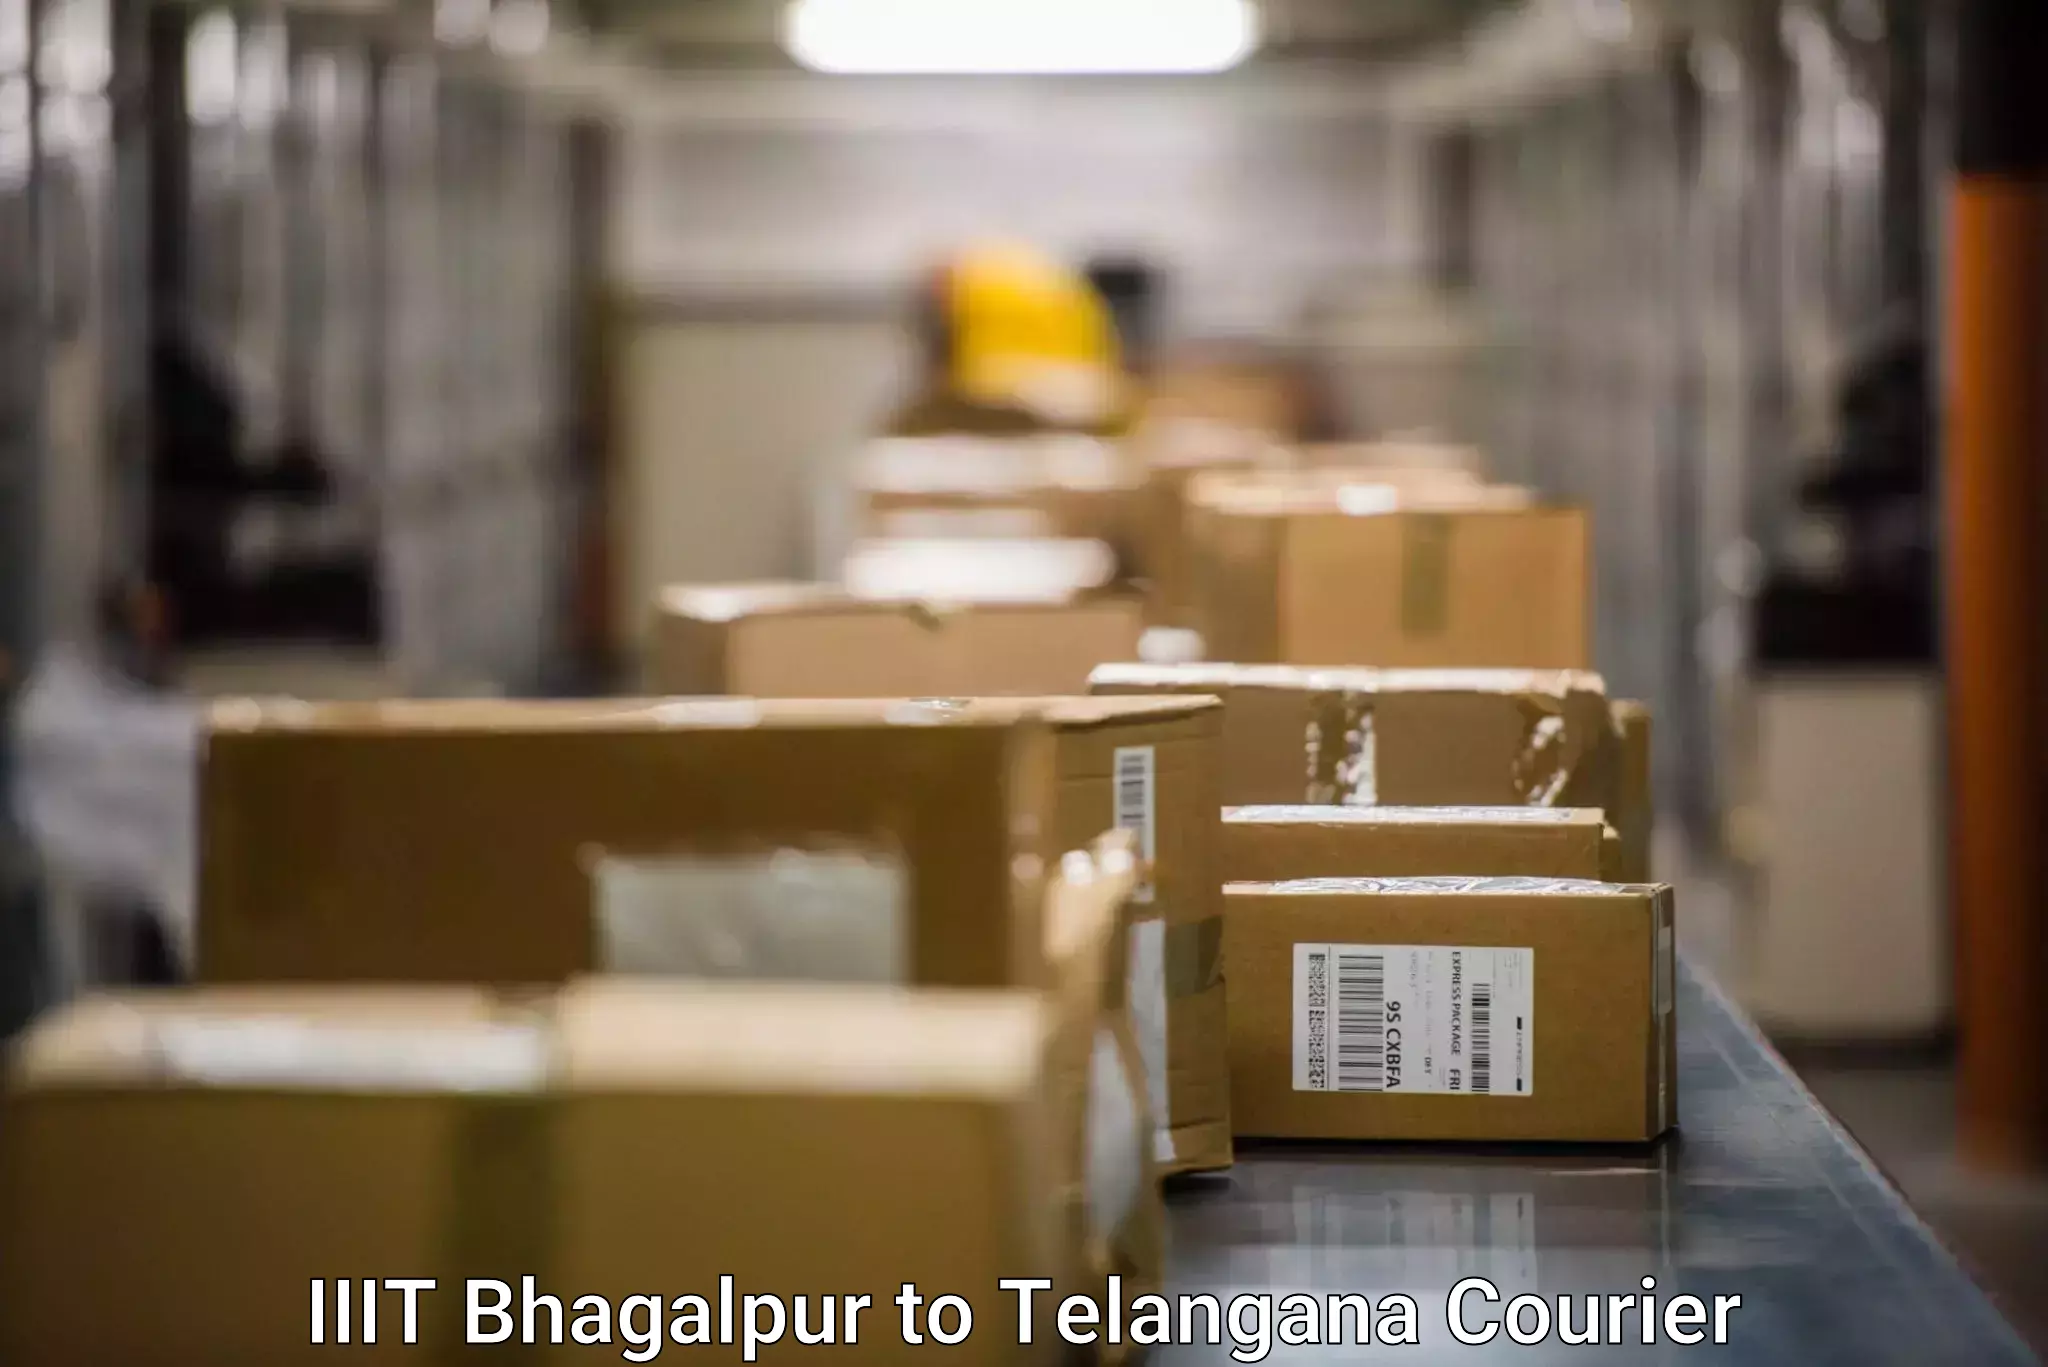 Digital courier platforms IIIT Bhagalpur to Narmetta